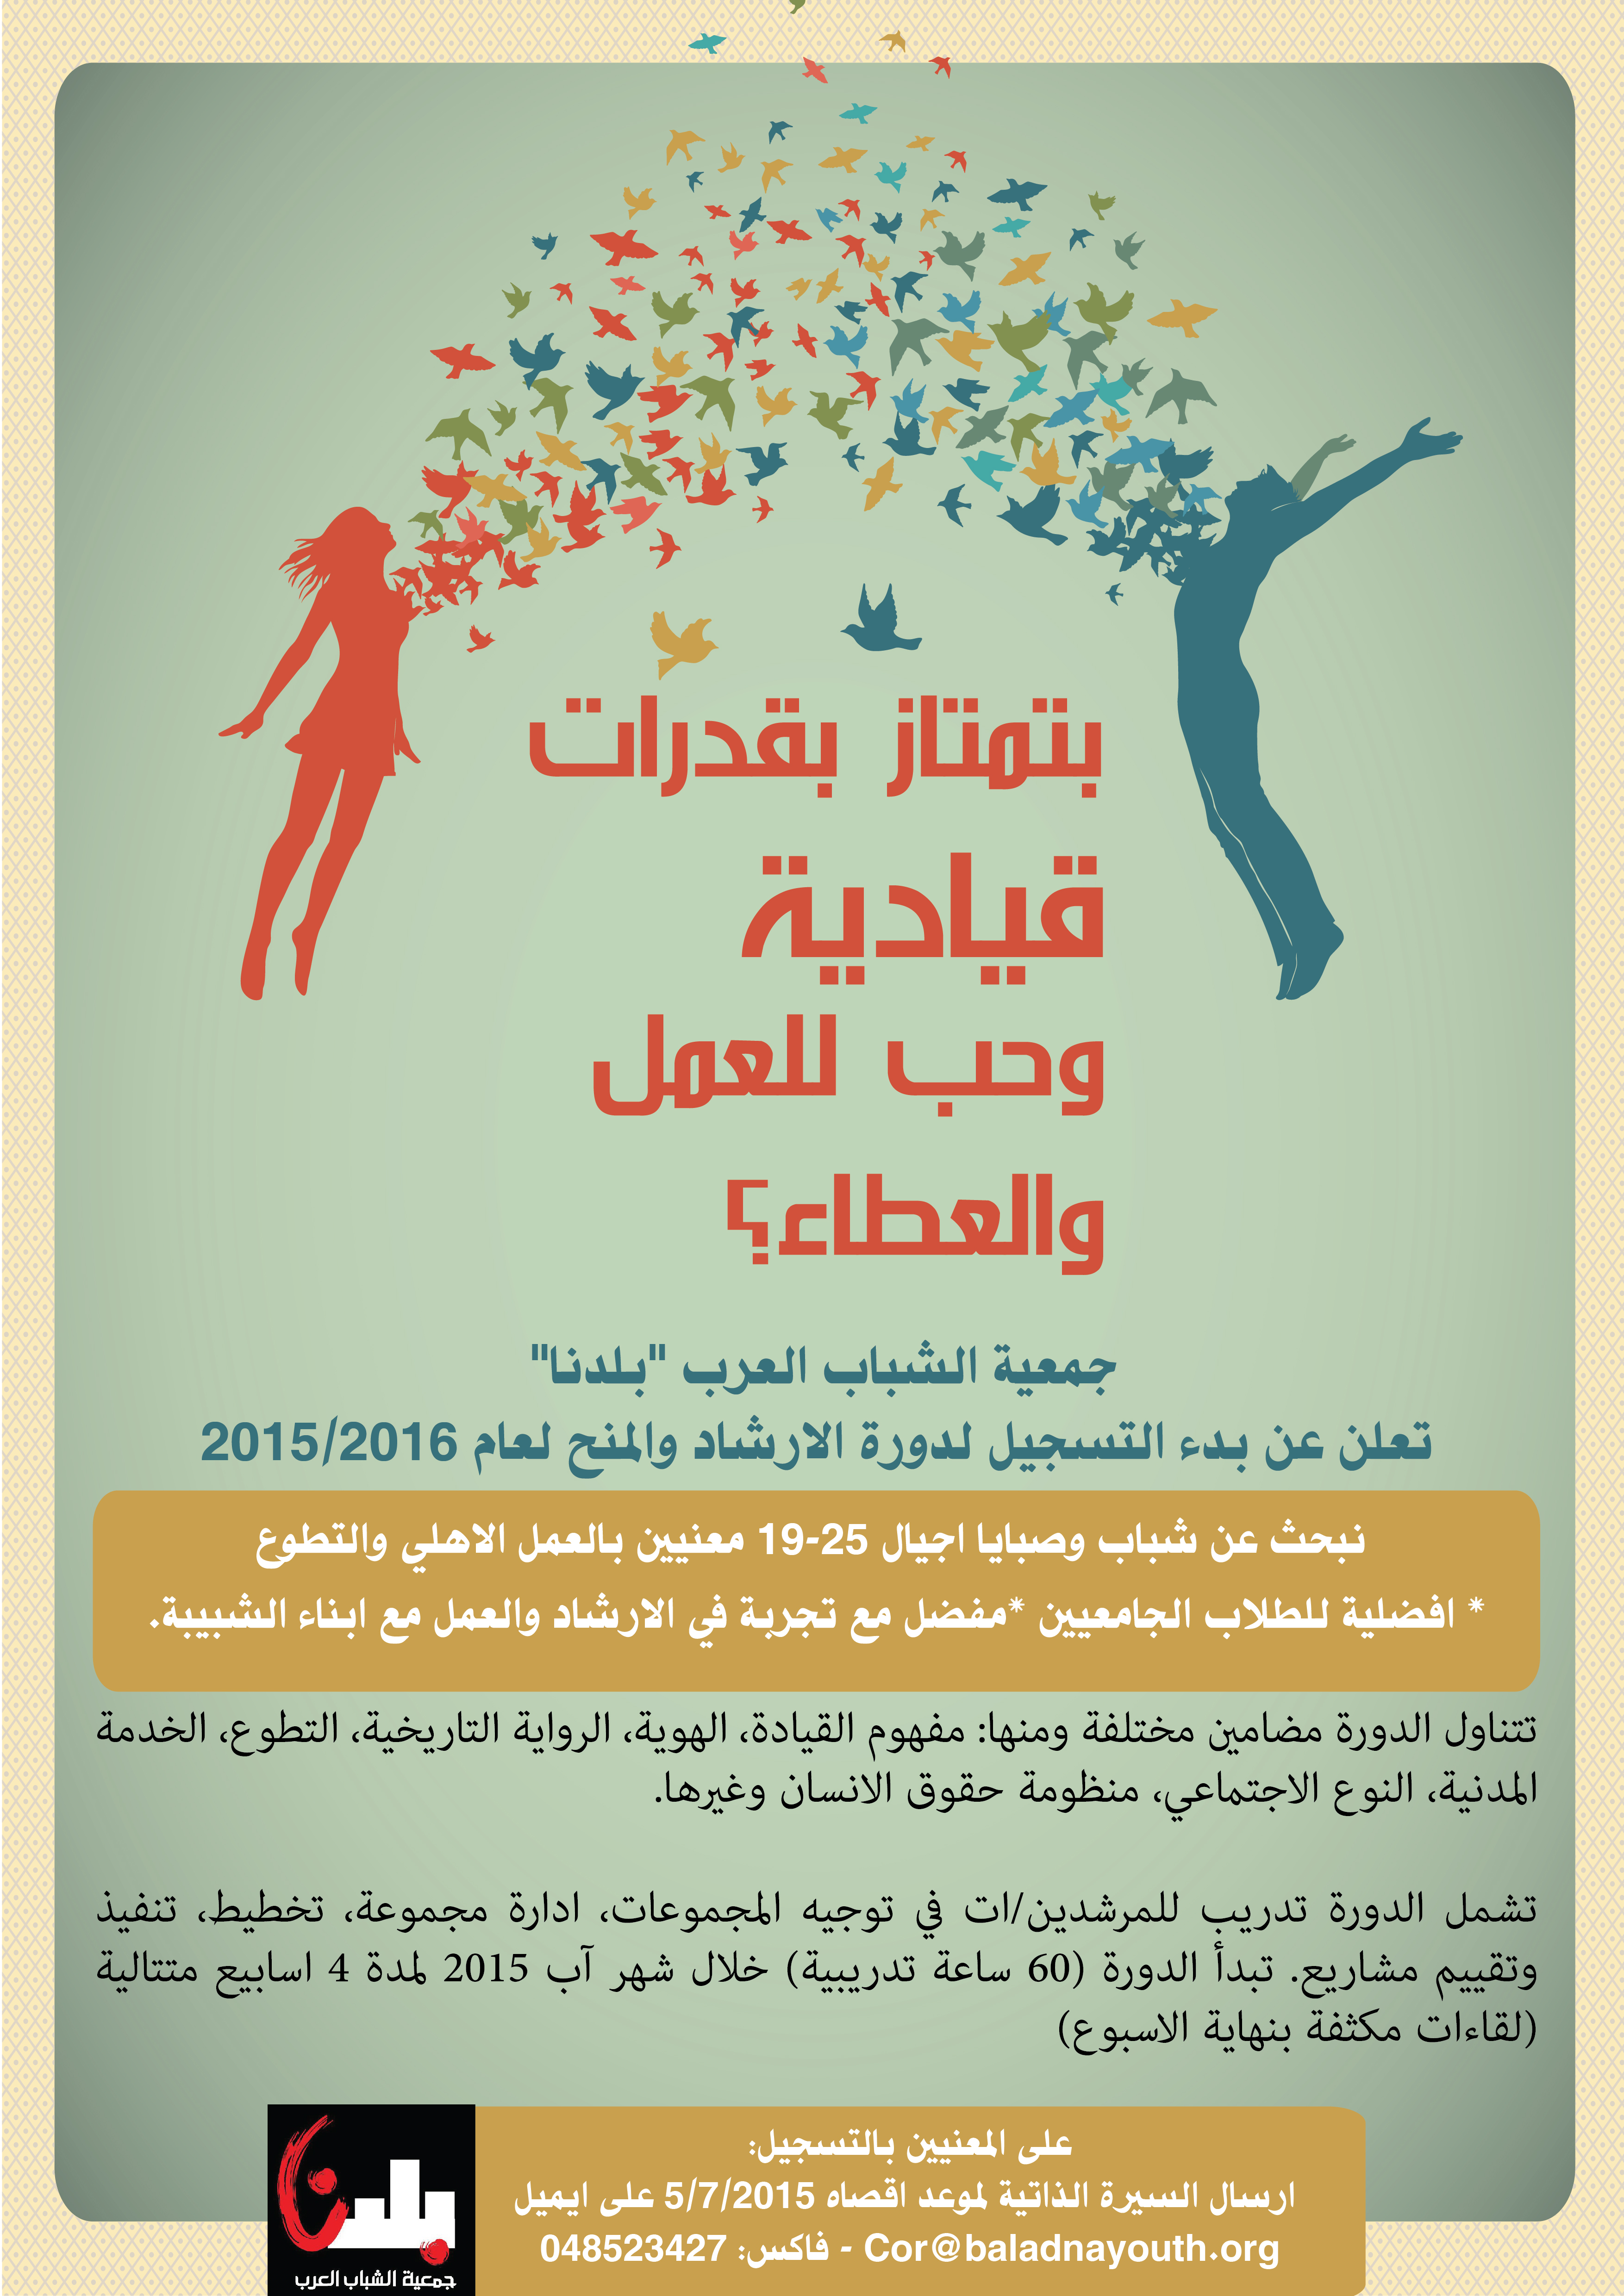 جمعية الشباب العرب بلدنا  تعلن عن بدء التسجيل لدورة الارشاد والمنح لعام 2015-2016